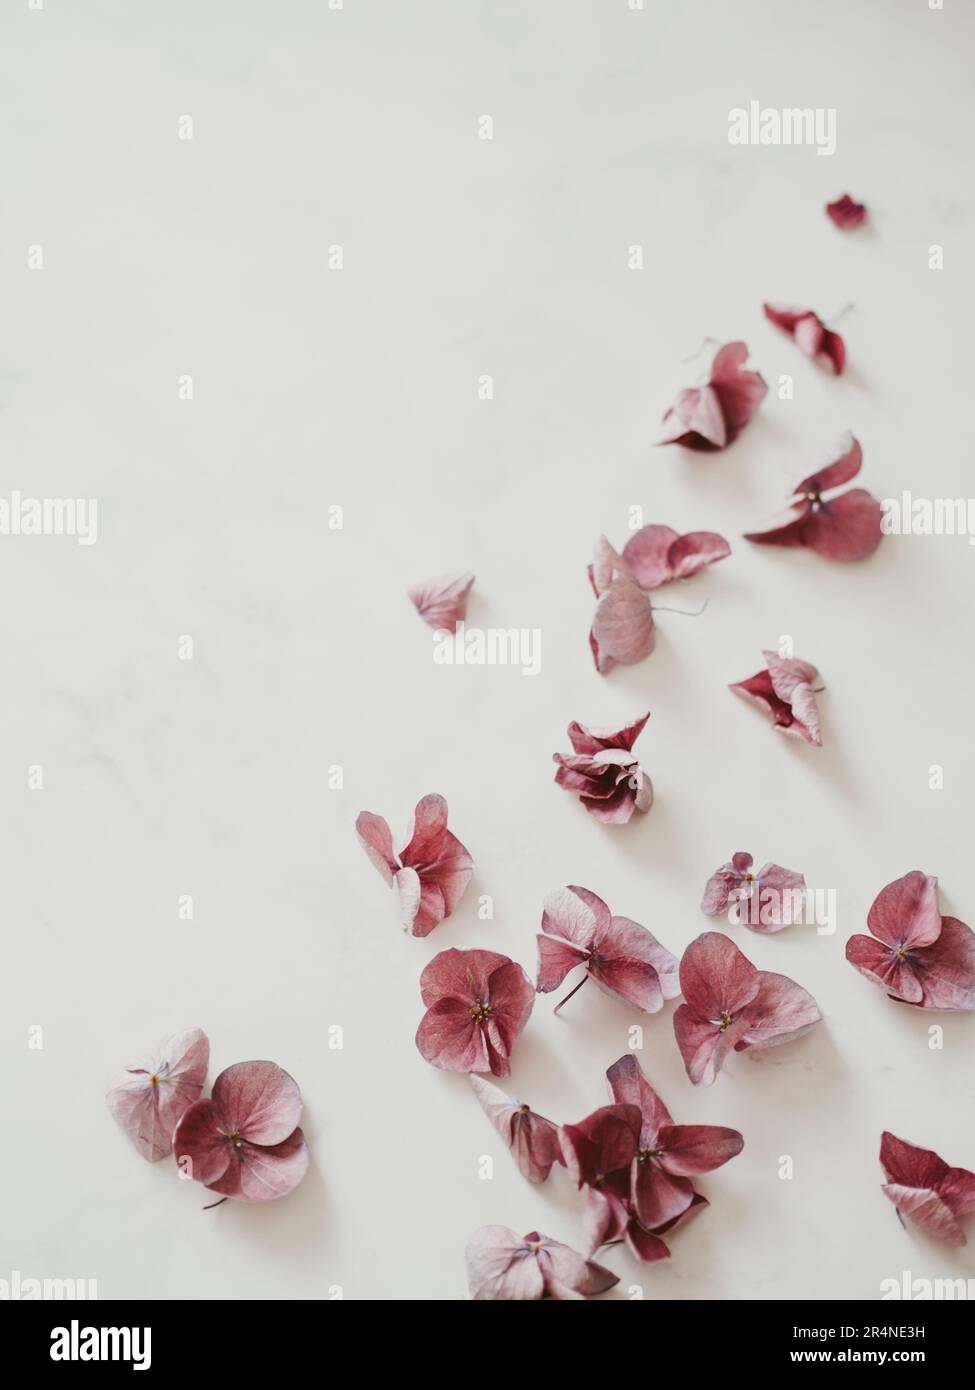 Blumenarrangements mit pinkfarbenen Hydrangea-Blumen, natürliche Blumenmuster-Flach liegen im Sommer-Saison-Stil. Minimales Schwarzweiß-Format mit Schatten. Draufsicht. Kopieren Sie Spac Stockfoto